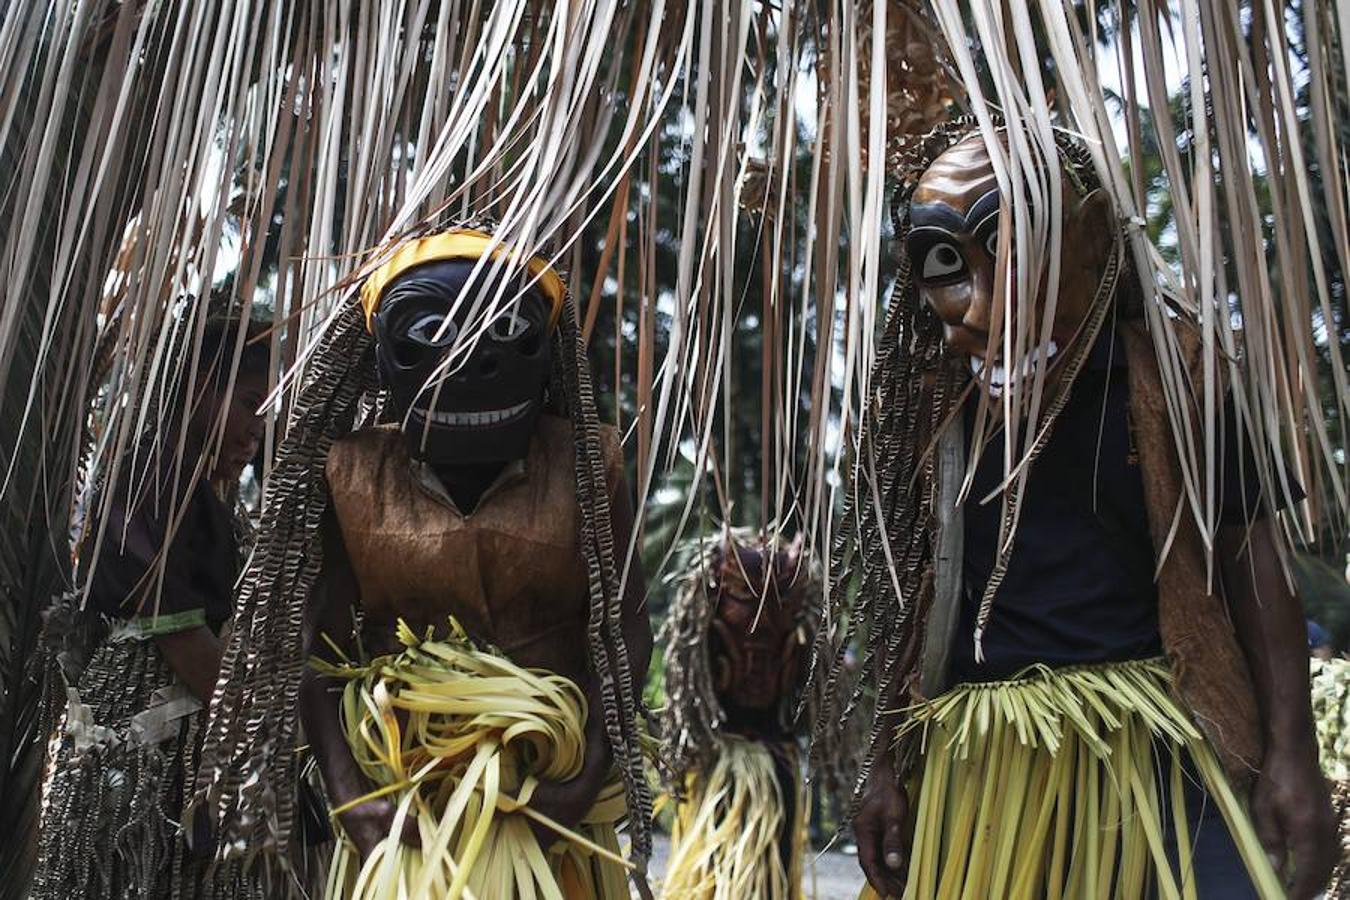 El pueblo de la tribu Mah Meri , Malasia, celebra el festival Ari Muyang o Día del Ancestro. Para la ocasión los miembros de la tribu utilizan máscaras para realizar el tradicional baile 'Main Jooh' y ofrecen oraciones y bendiciones en honor a sus antepasados.